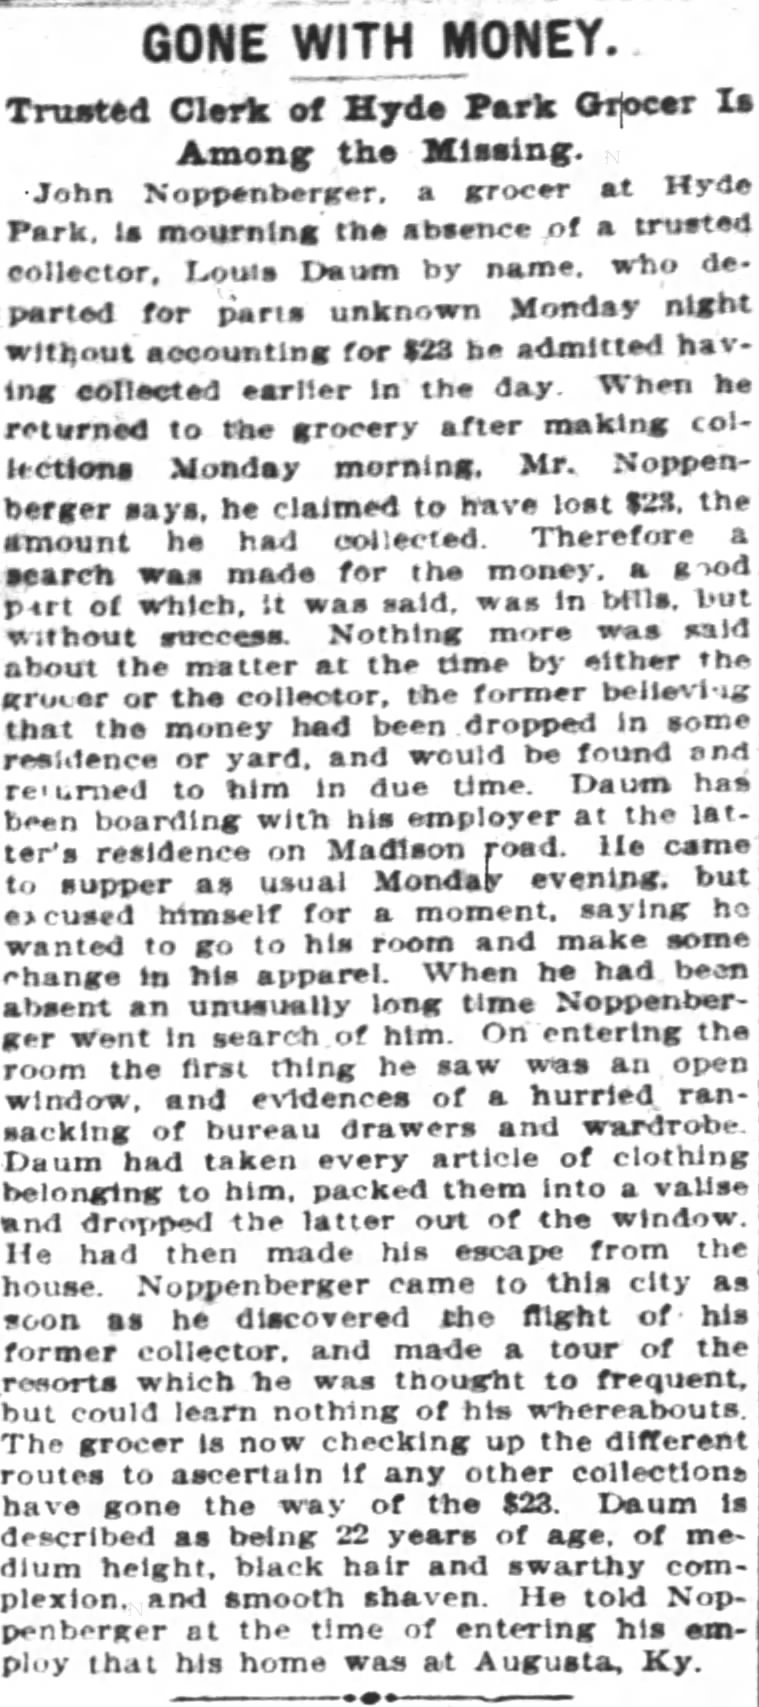 Cincinnati Enquirer 12-17-1902 Noppenberger Grocer Theft